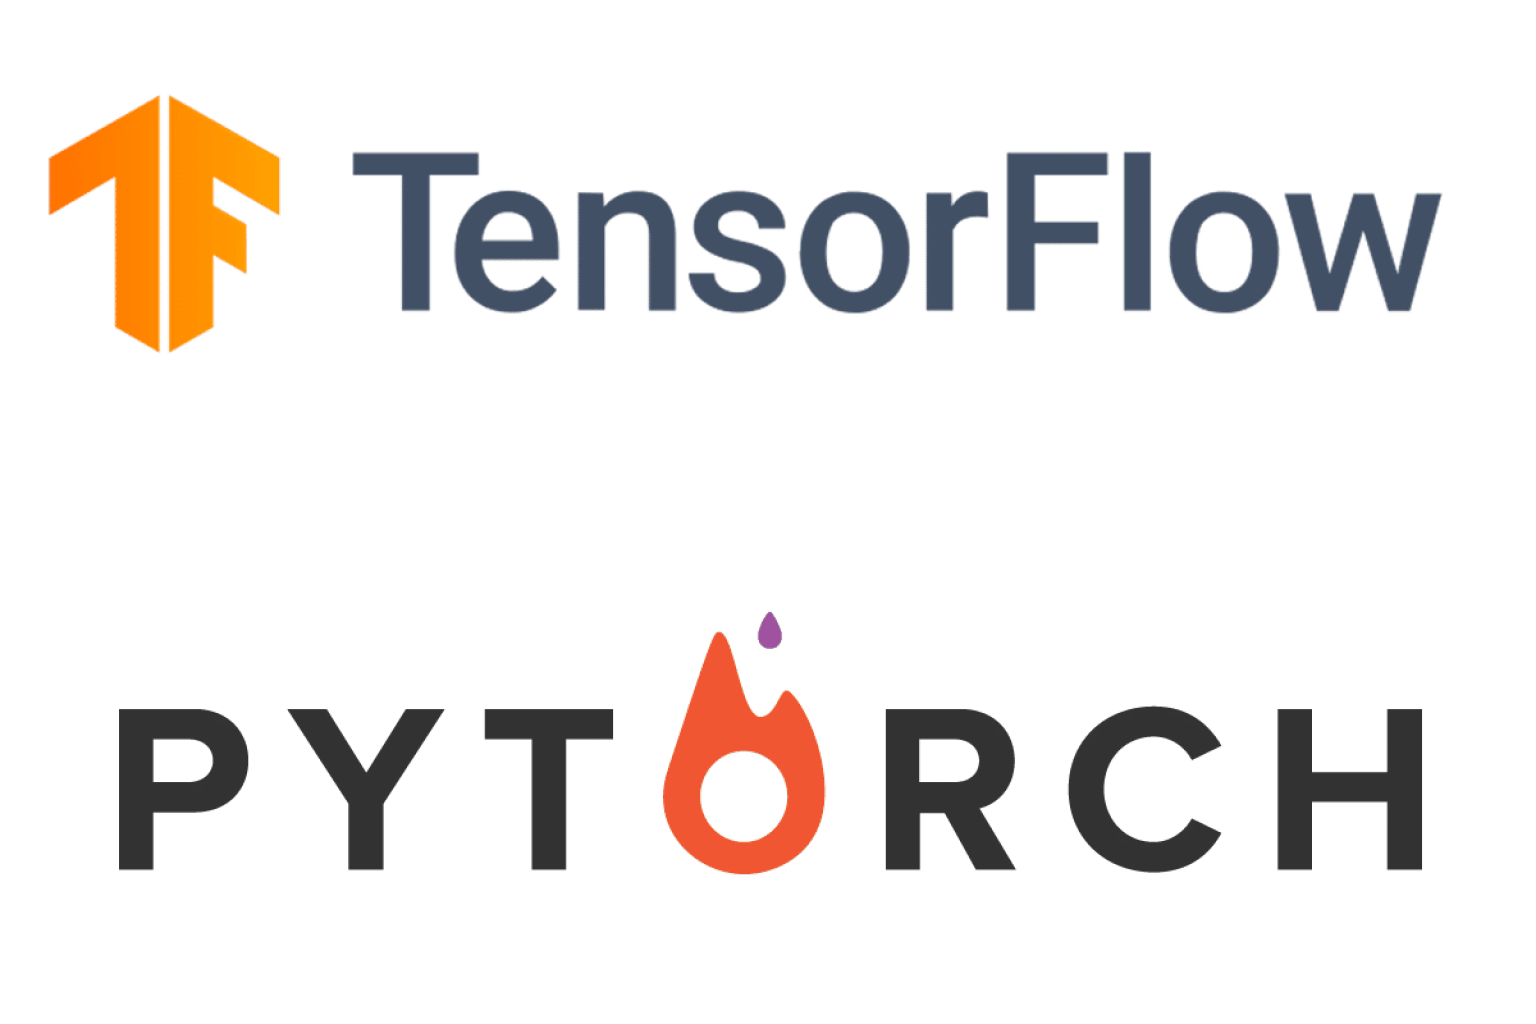 PyTorch y TensorFlow son dos de los marcos de aprendizaje profundo más populares utilizados en la comunidad de ciencia de datos. Con el reciente lanzamiento de PyTorch 2.0, muchos se preguntan si puede competir con la dominancia de TensorFlow. En esta publicación de blog, compararemos PyTorch 2.0 y TensorFlow y veremos si PyTorch 2.0 es el cambio de juego del que todos están hablando.